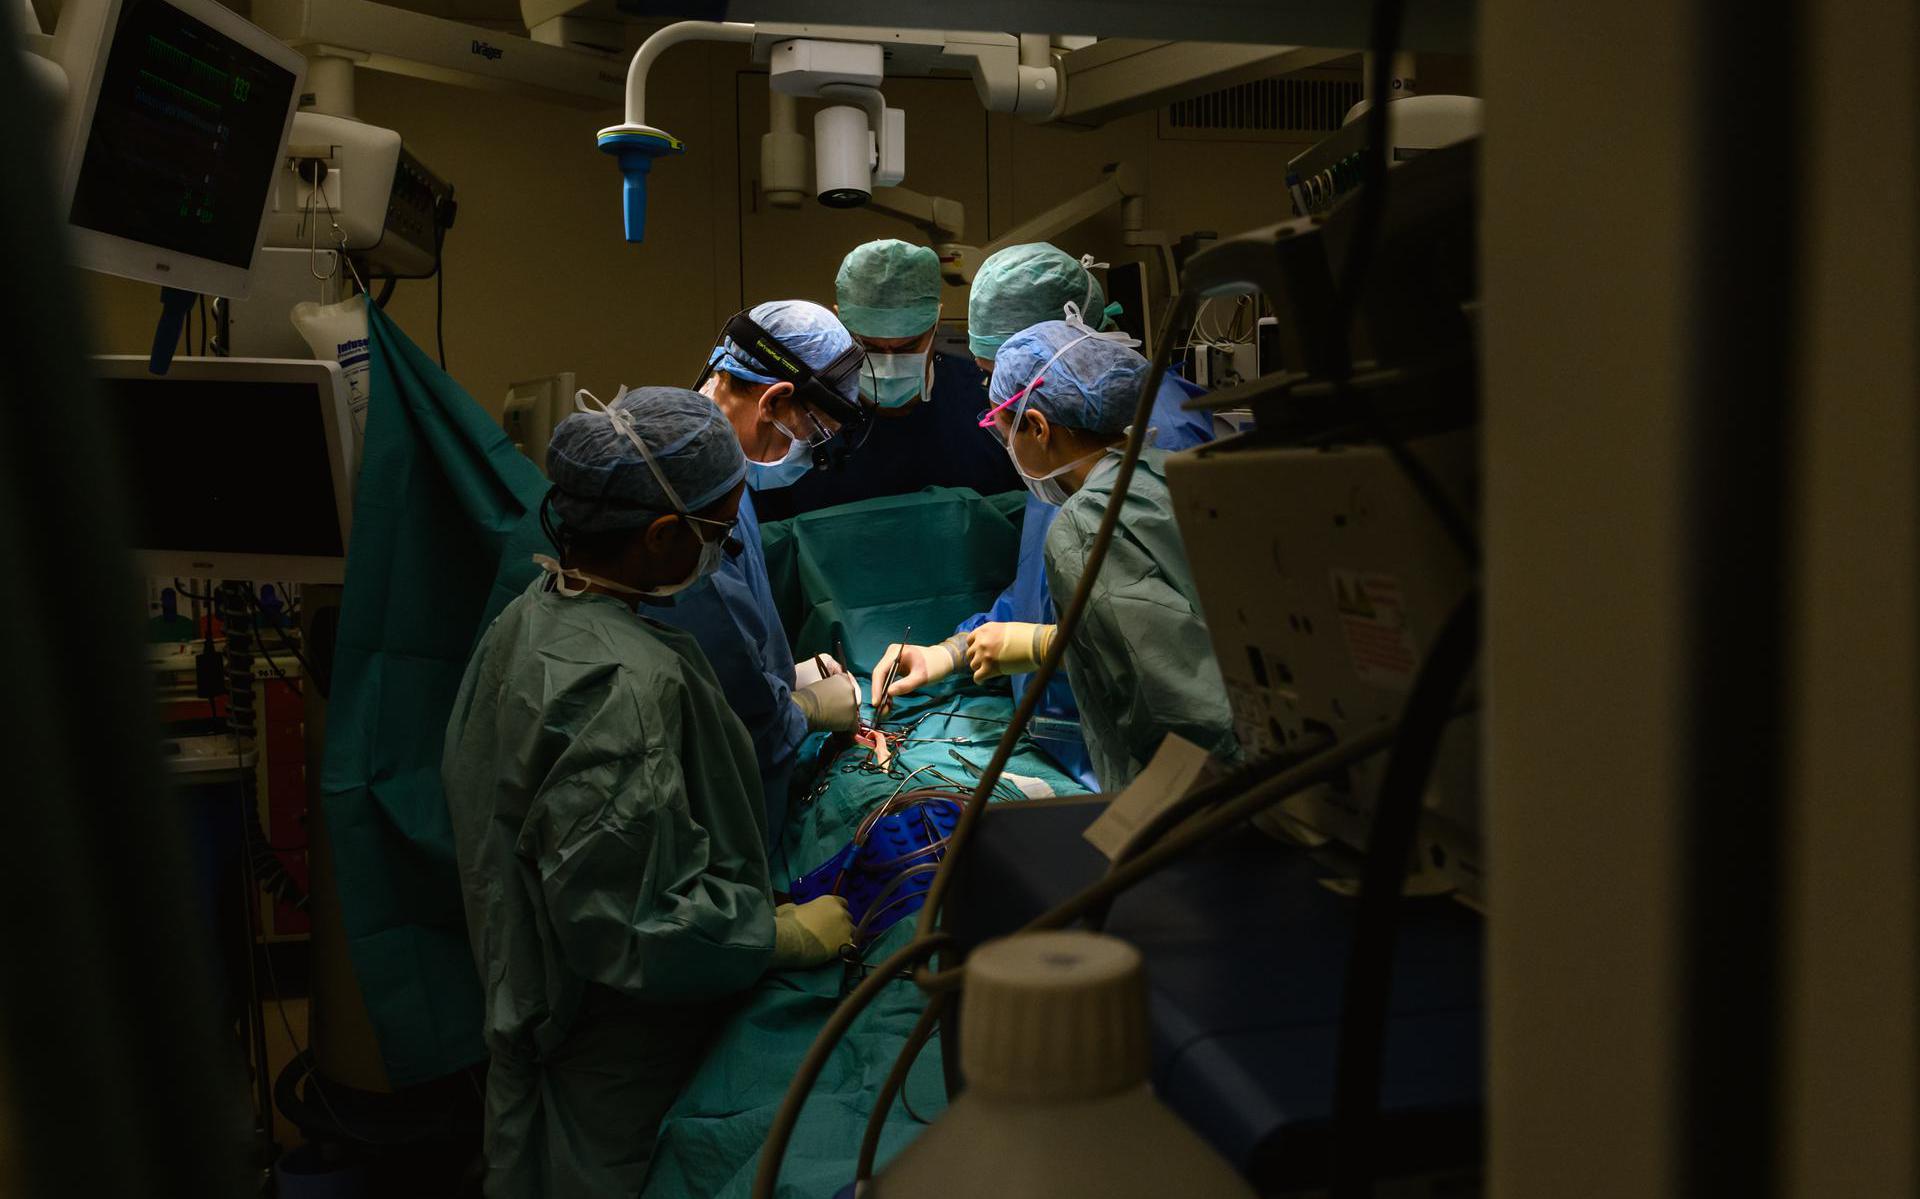 Hartoperatie in het Leids Universitair Medisch Centrum.